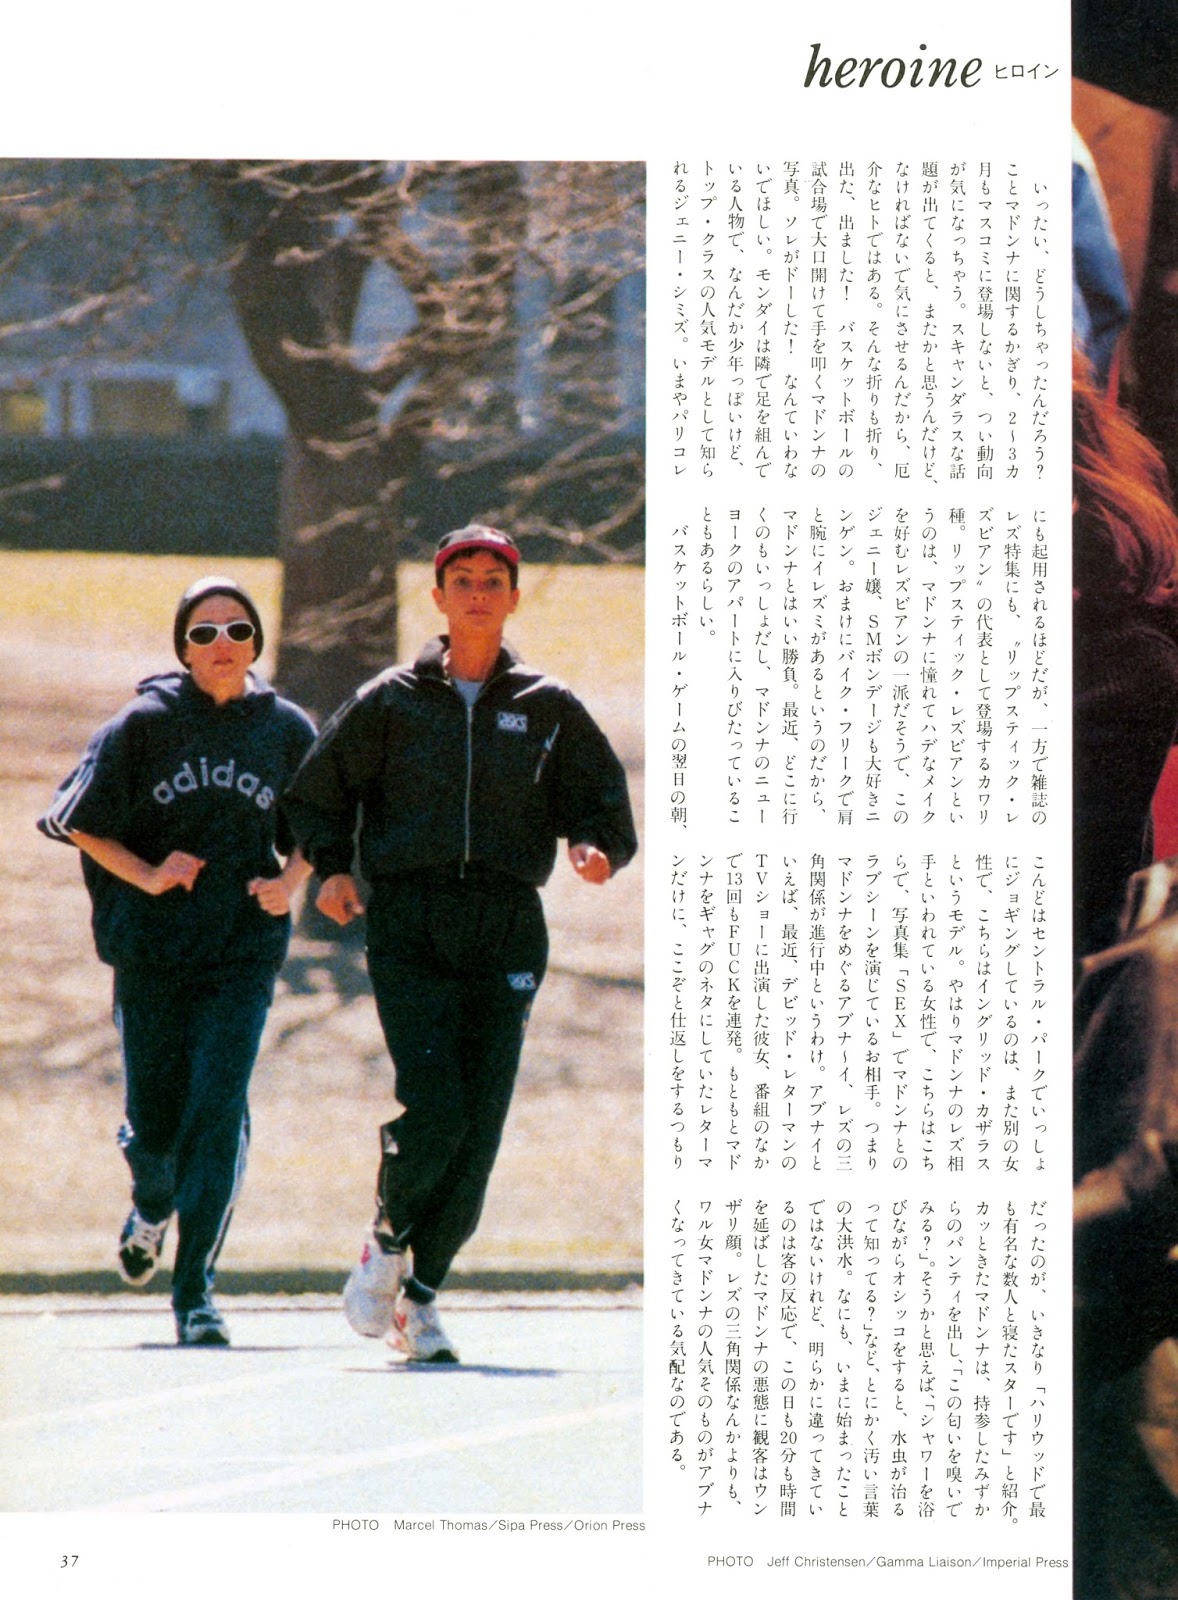 Focus+Japan+April+20+1994+page+37+previe